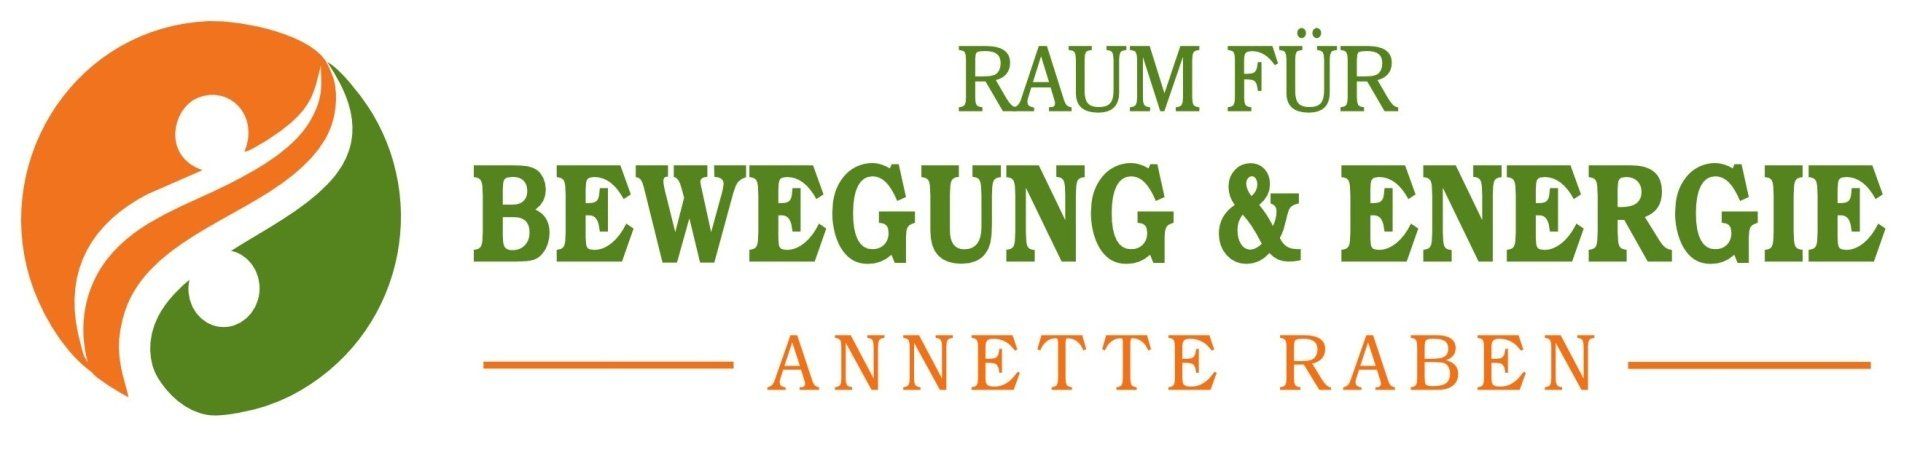 Raum-für-Bewegung-Energie-logo